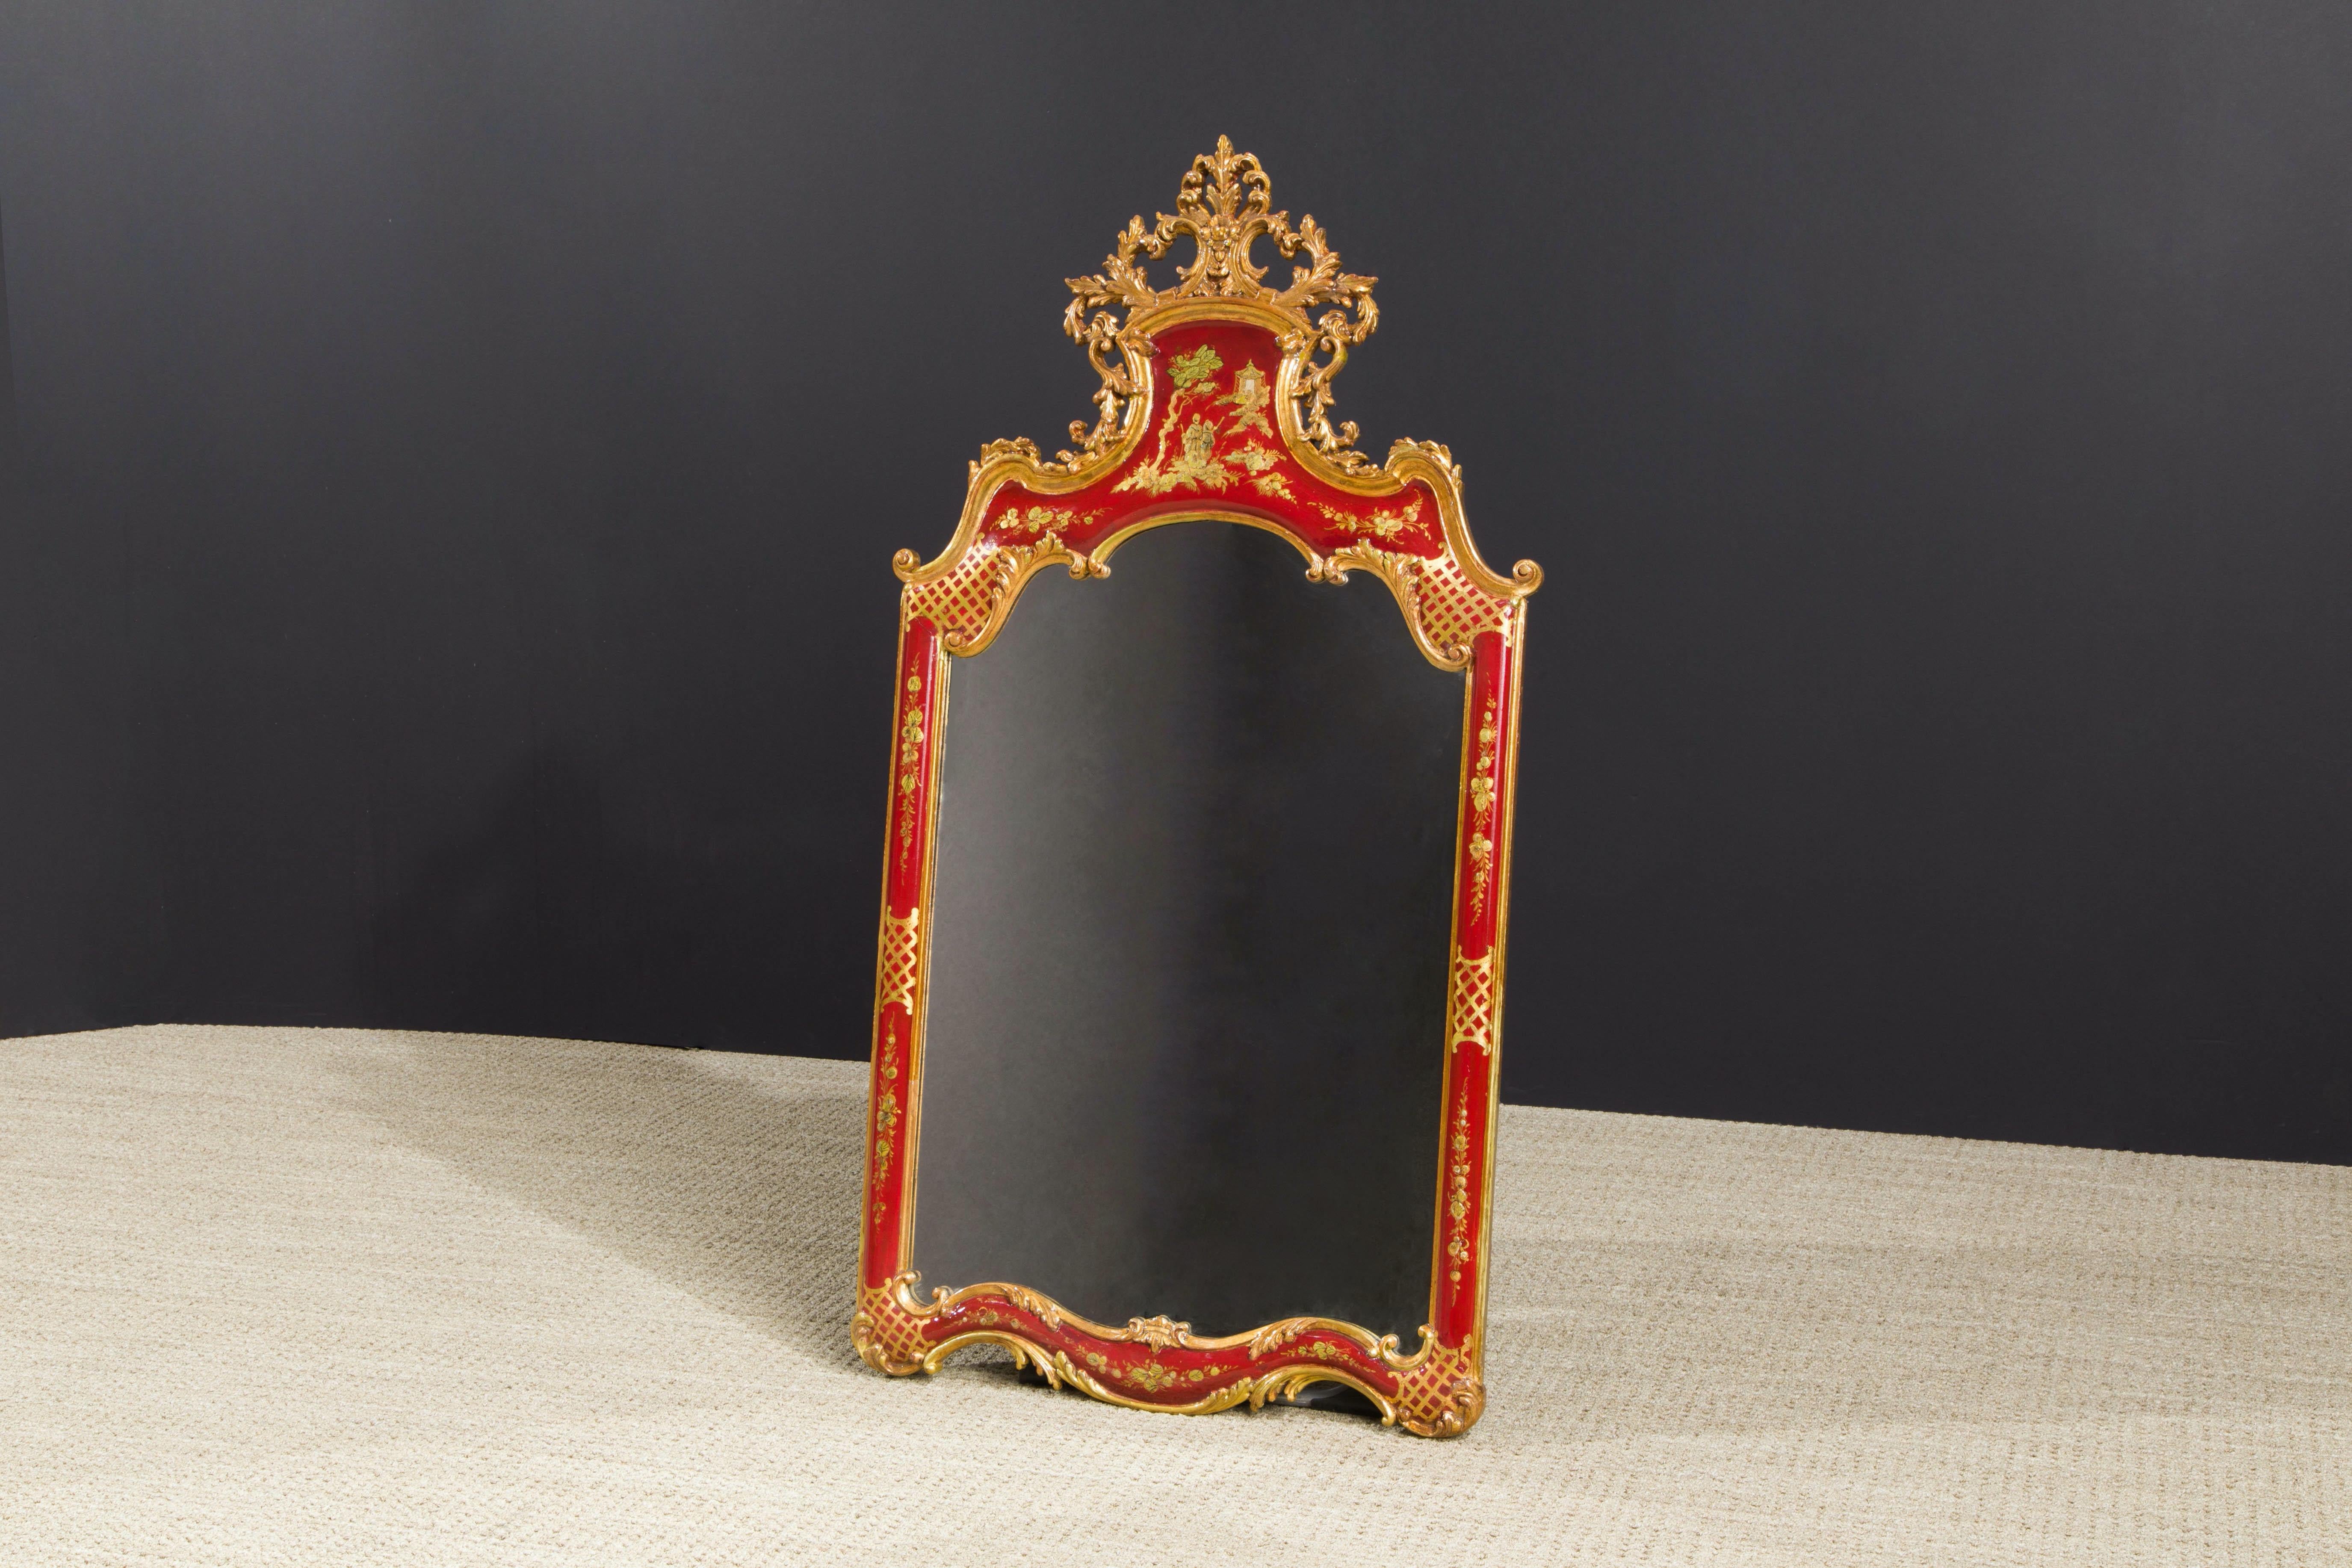 Dieser große und einzigartige Spiegel im französischen Rokoko-Stil, der eine handgemalte Chinoiserie-Szene zeigt, ist ein unglaubliches Stück Maison Jansen-Geschichte. Er wurde vom Maison Jansen-Historiker und Autor James Archer Abbott beglaubigt;